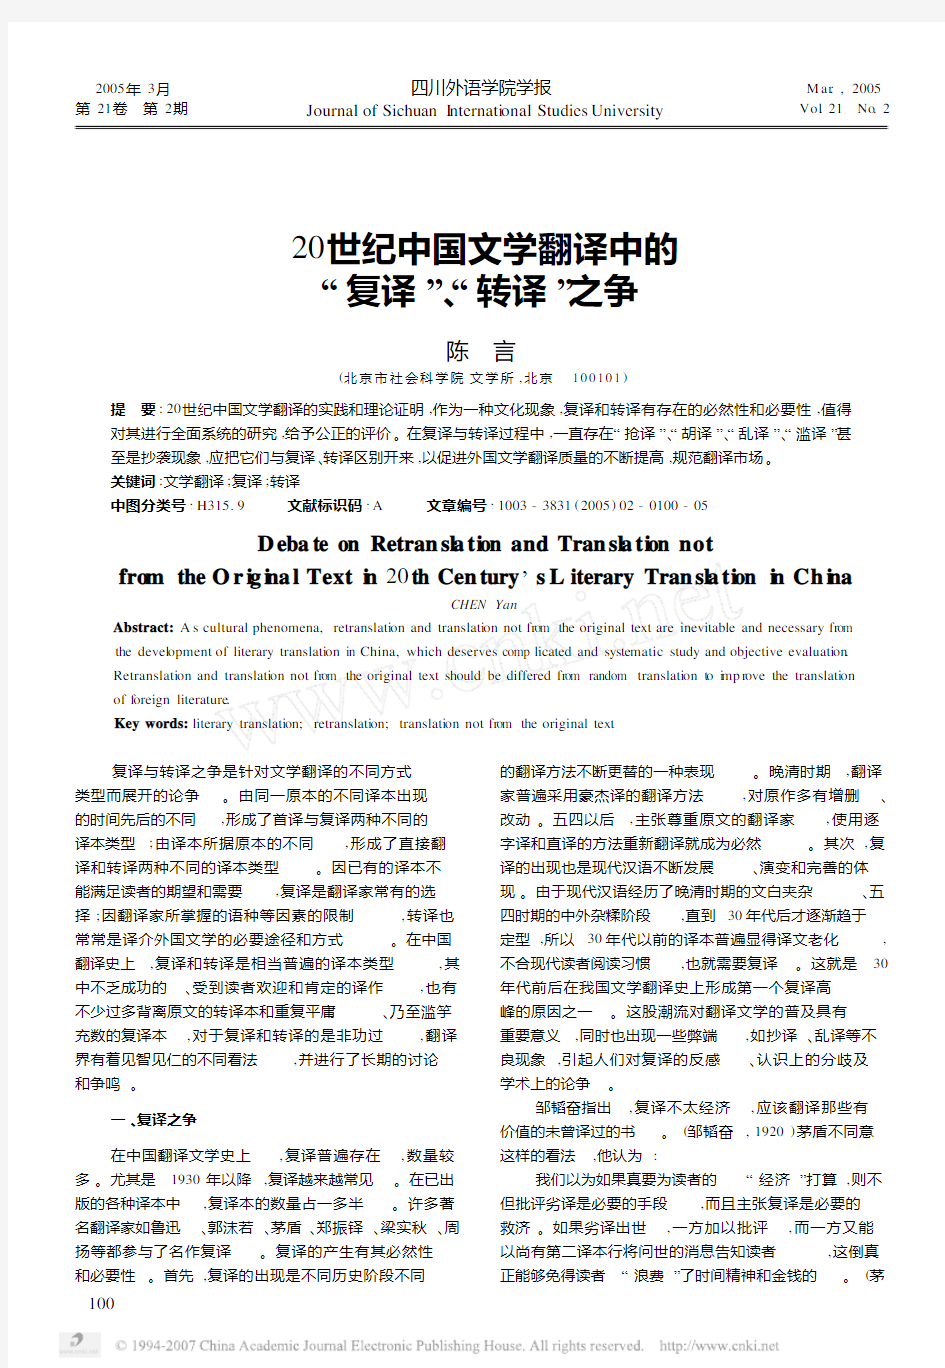 20世纪中国文学翻译中的_复译_转译_之争